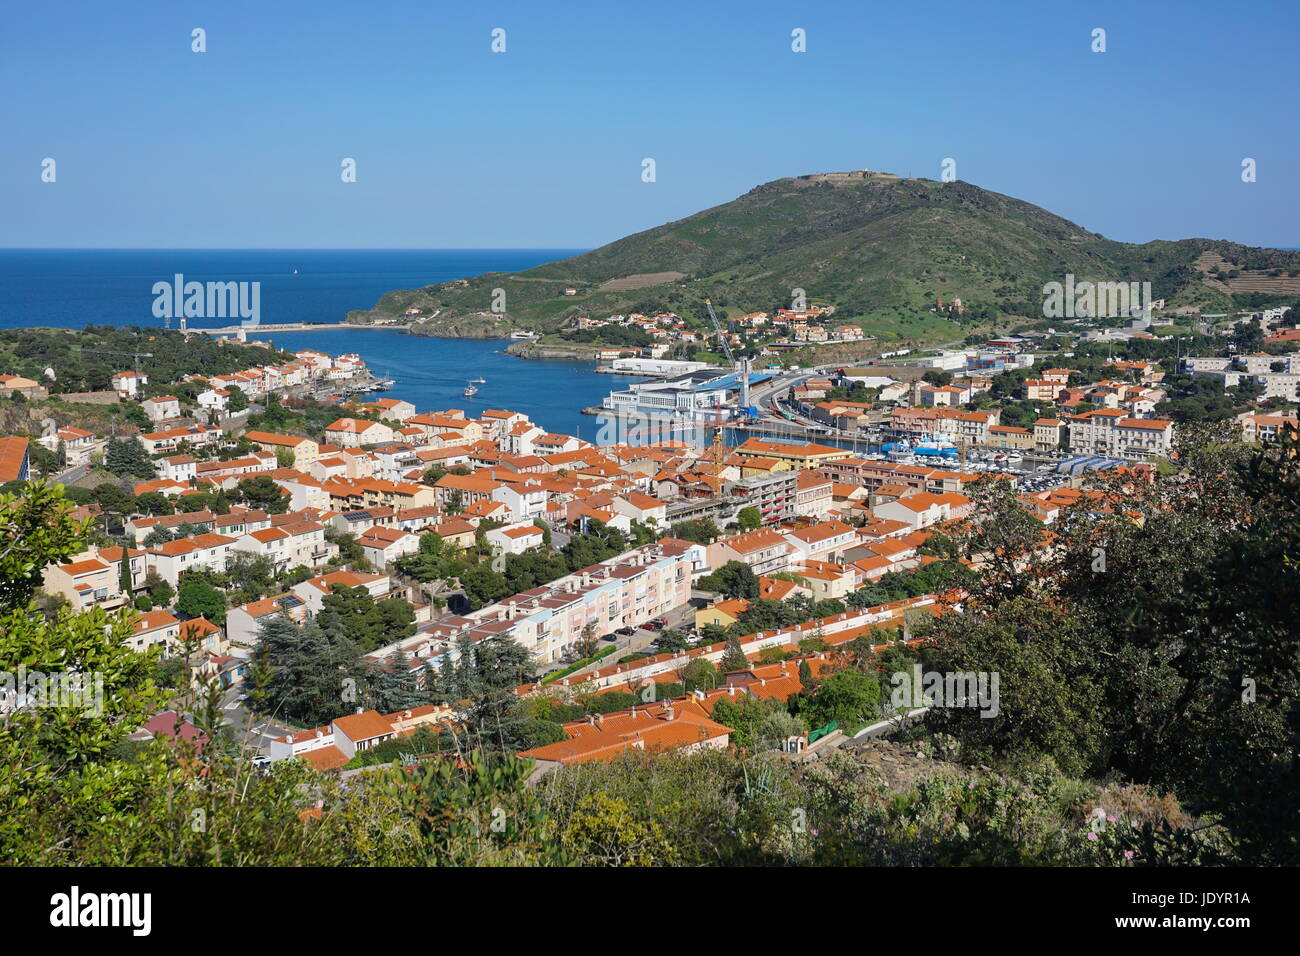 La città costiera di Port Vendres con il suo porto e il fort recare in background, mare Mediterraneo, Rossiglione e Pirenei Orientali,a sud della Francia Foto Stock